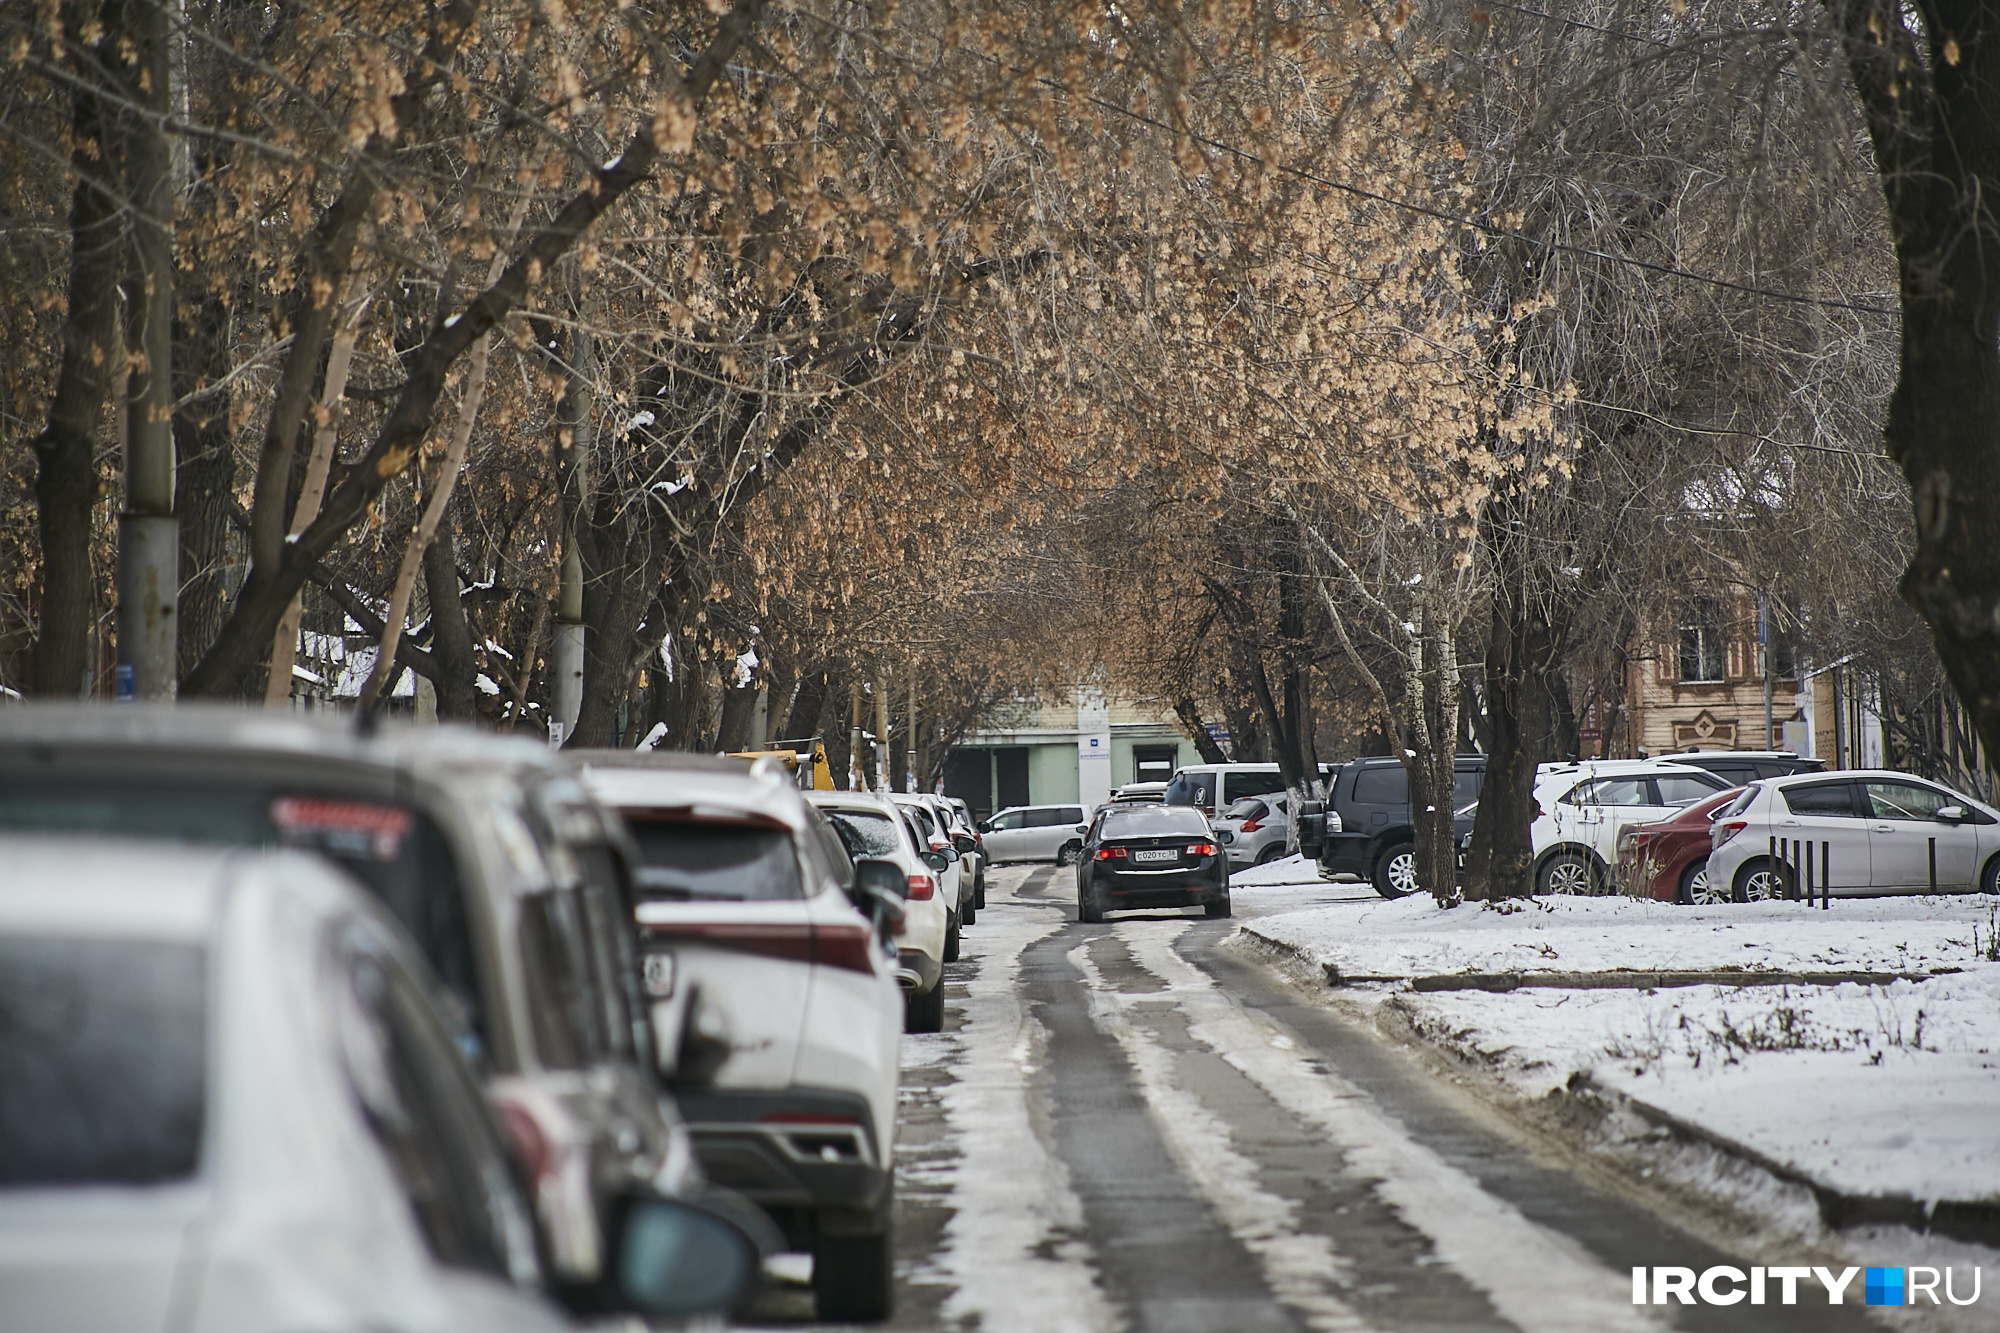 Улица Бабушкина не избежала участи всех улиц в центре Иркутска и заставлена автомобилями